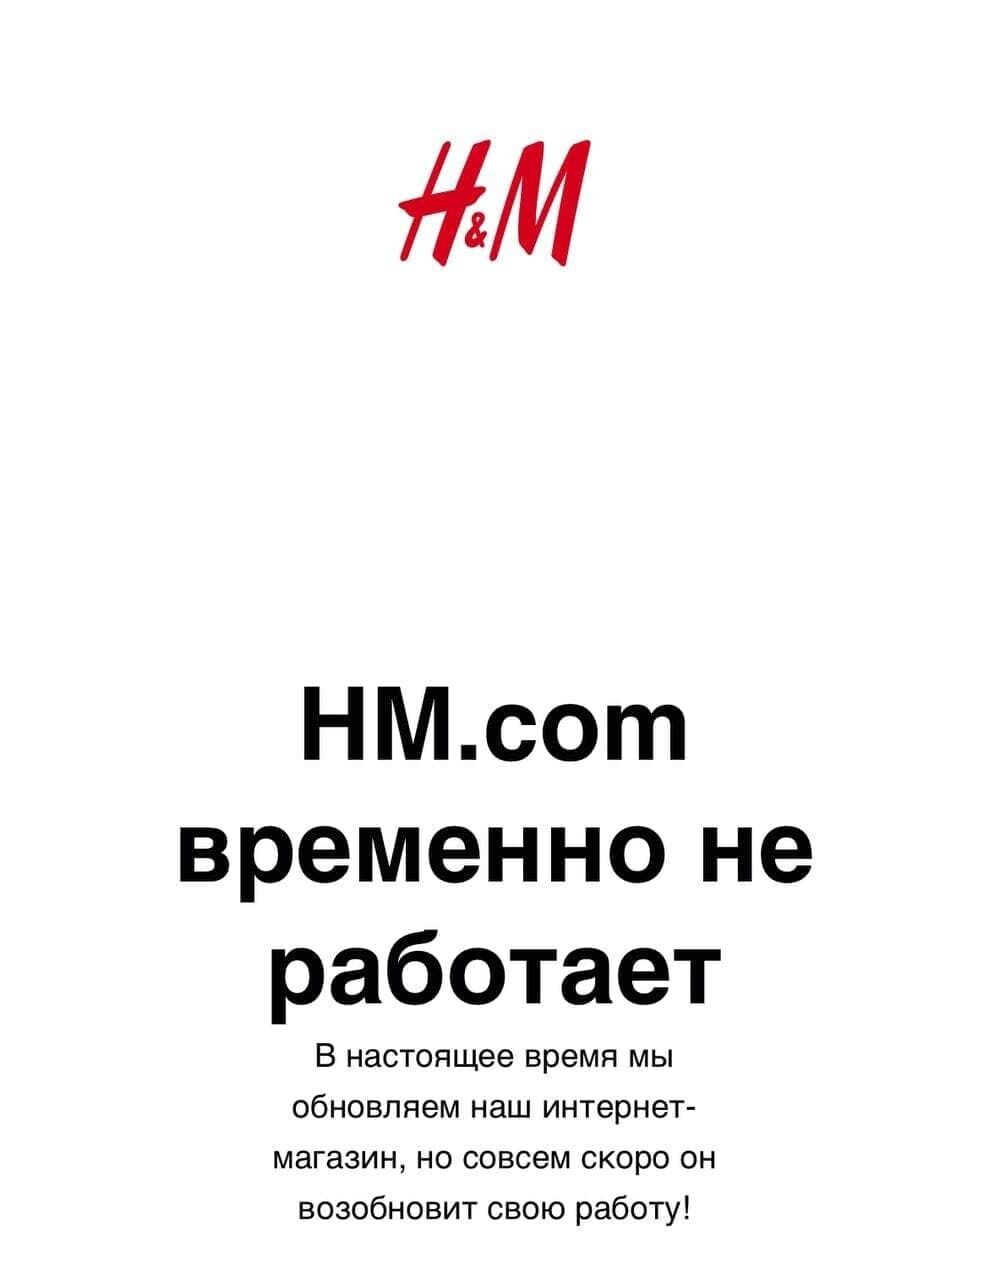 H&M призупиняє продаж товарів у Росії